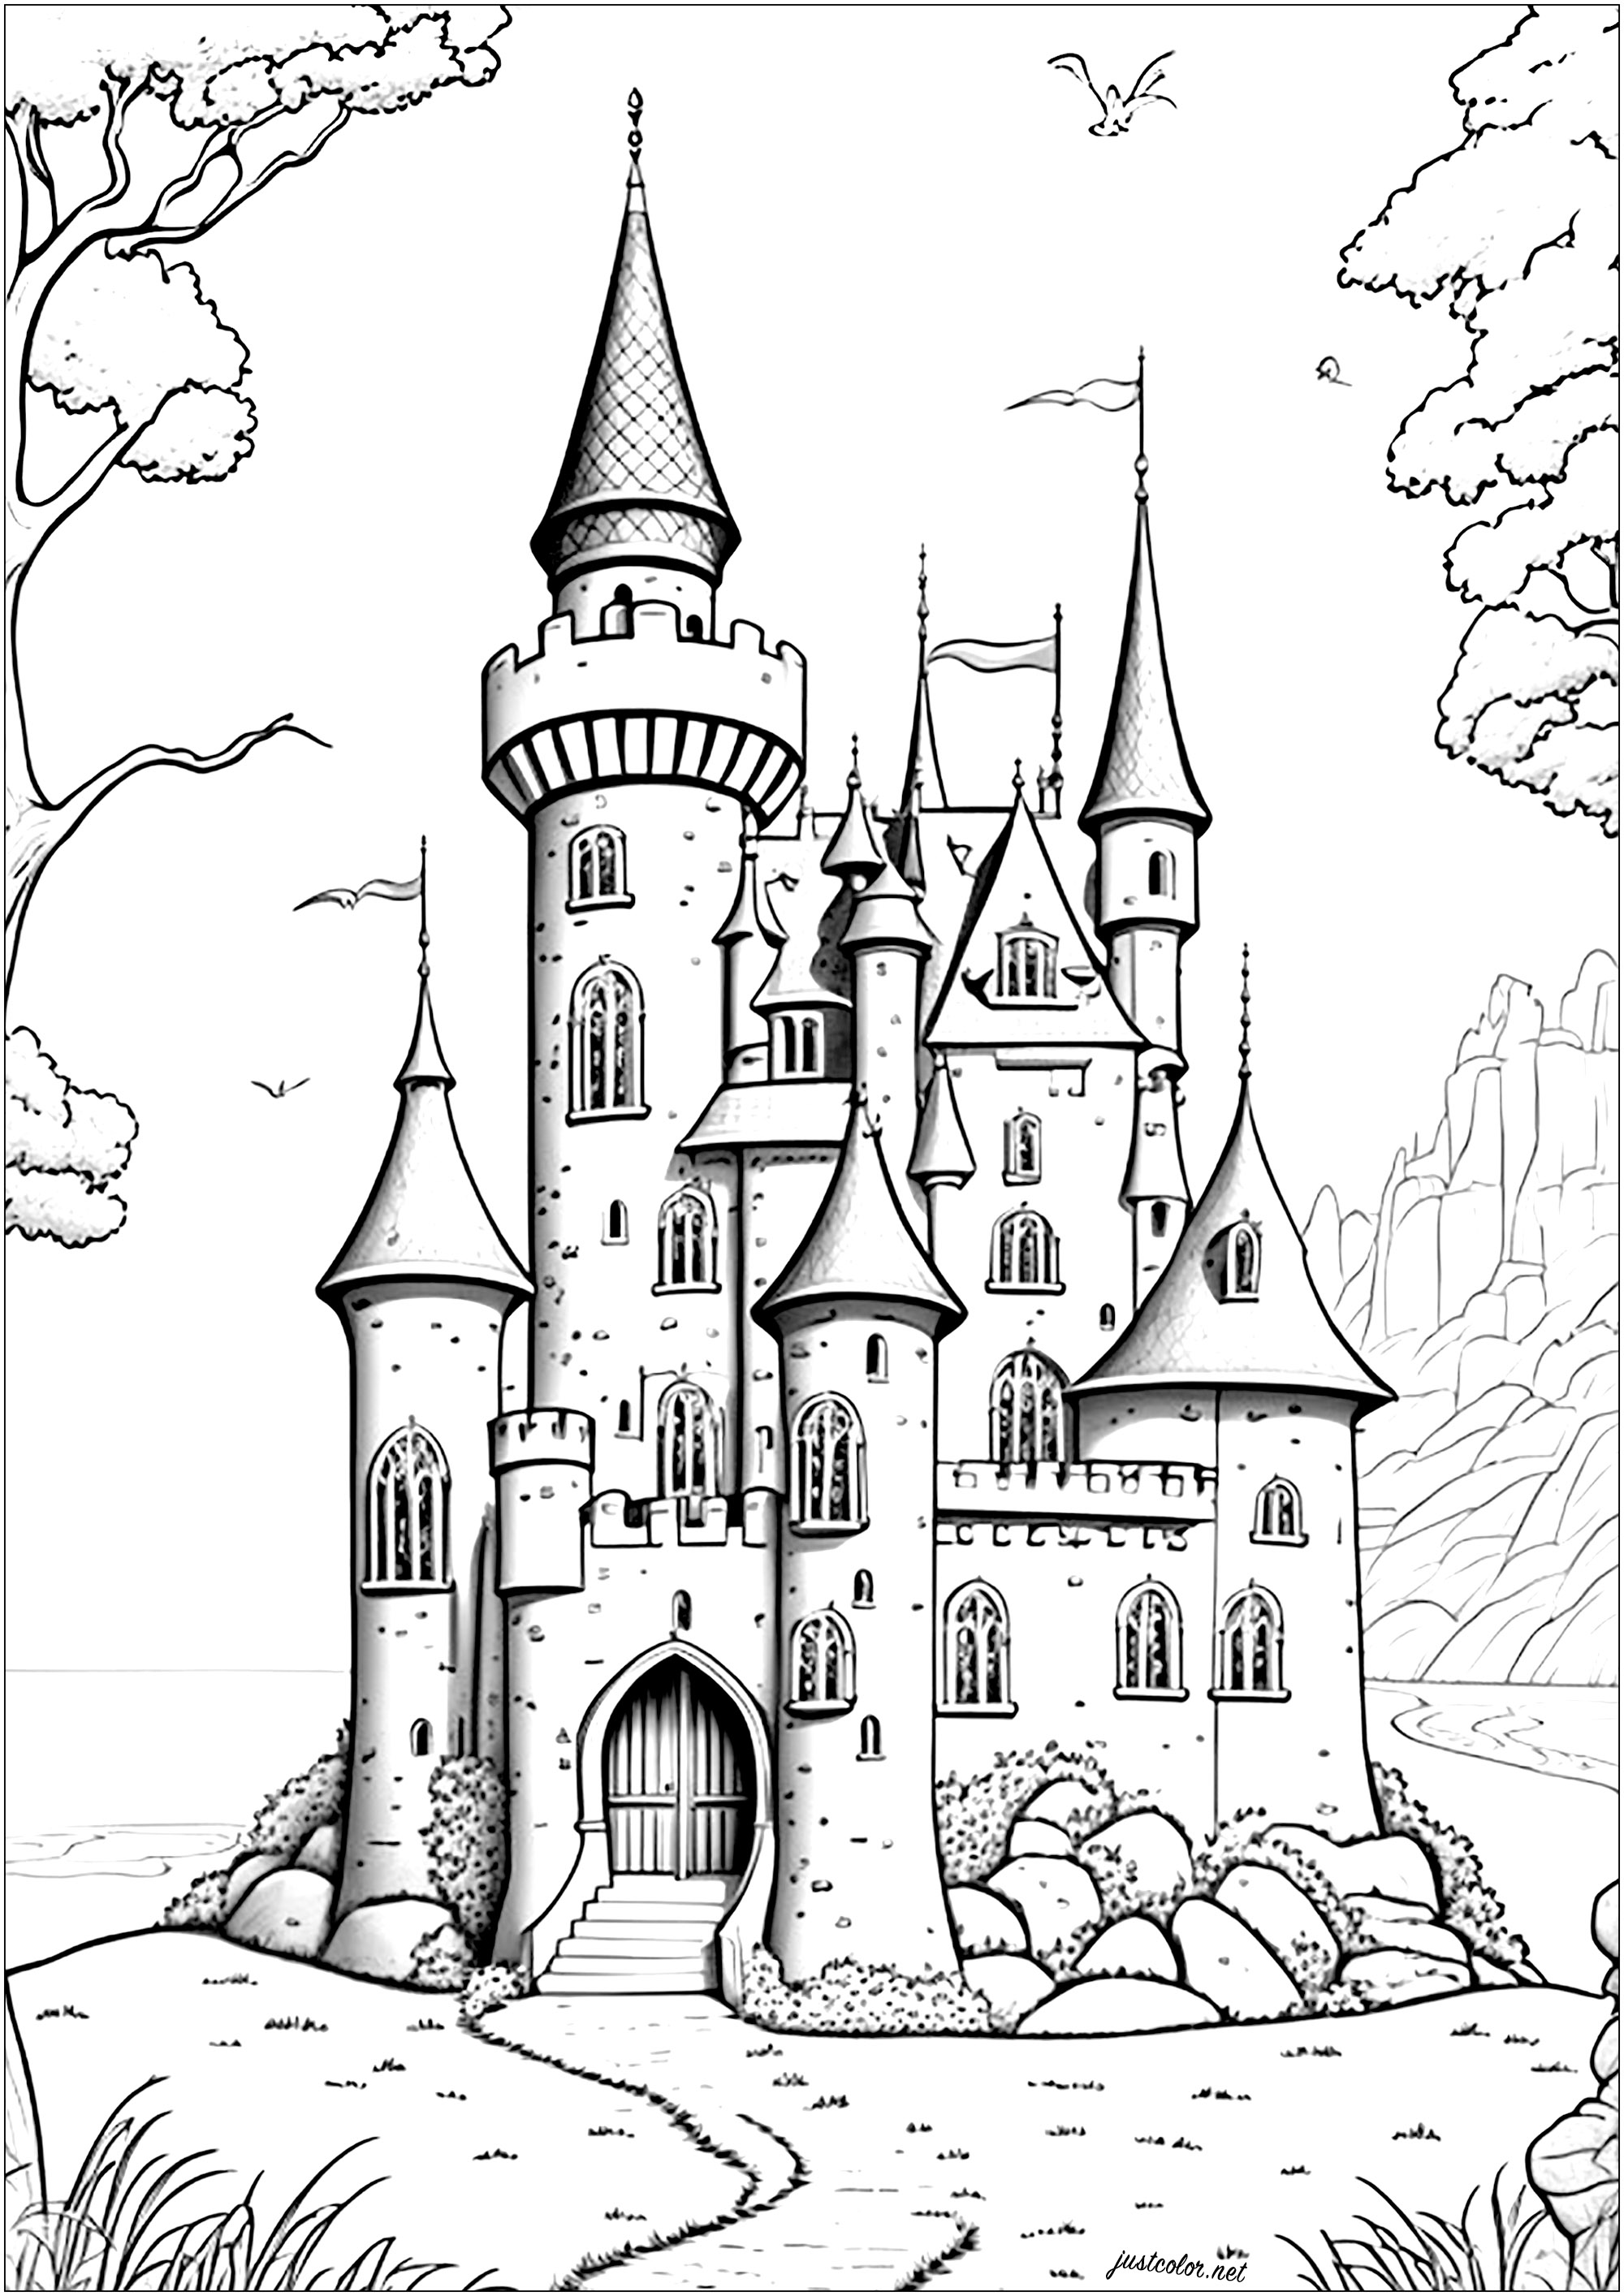 Castelo majestoso que se ergue para o céu, com muralhas de pedra e torres pontiagudas. O portão principal é grande e imponente, e cada torreão é encimado por uma bandeira que tremula ao vento.Entre no mundo dos contos de fadas da Disney com este castelo 100% original ...